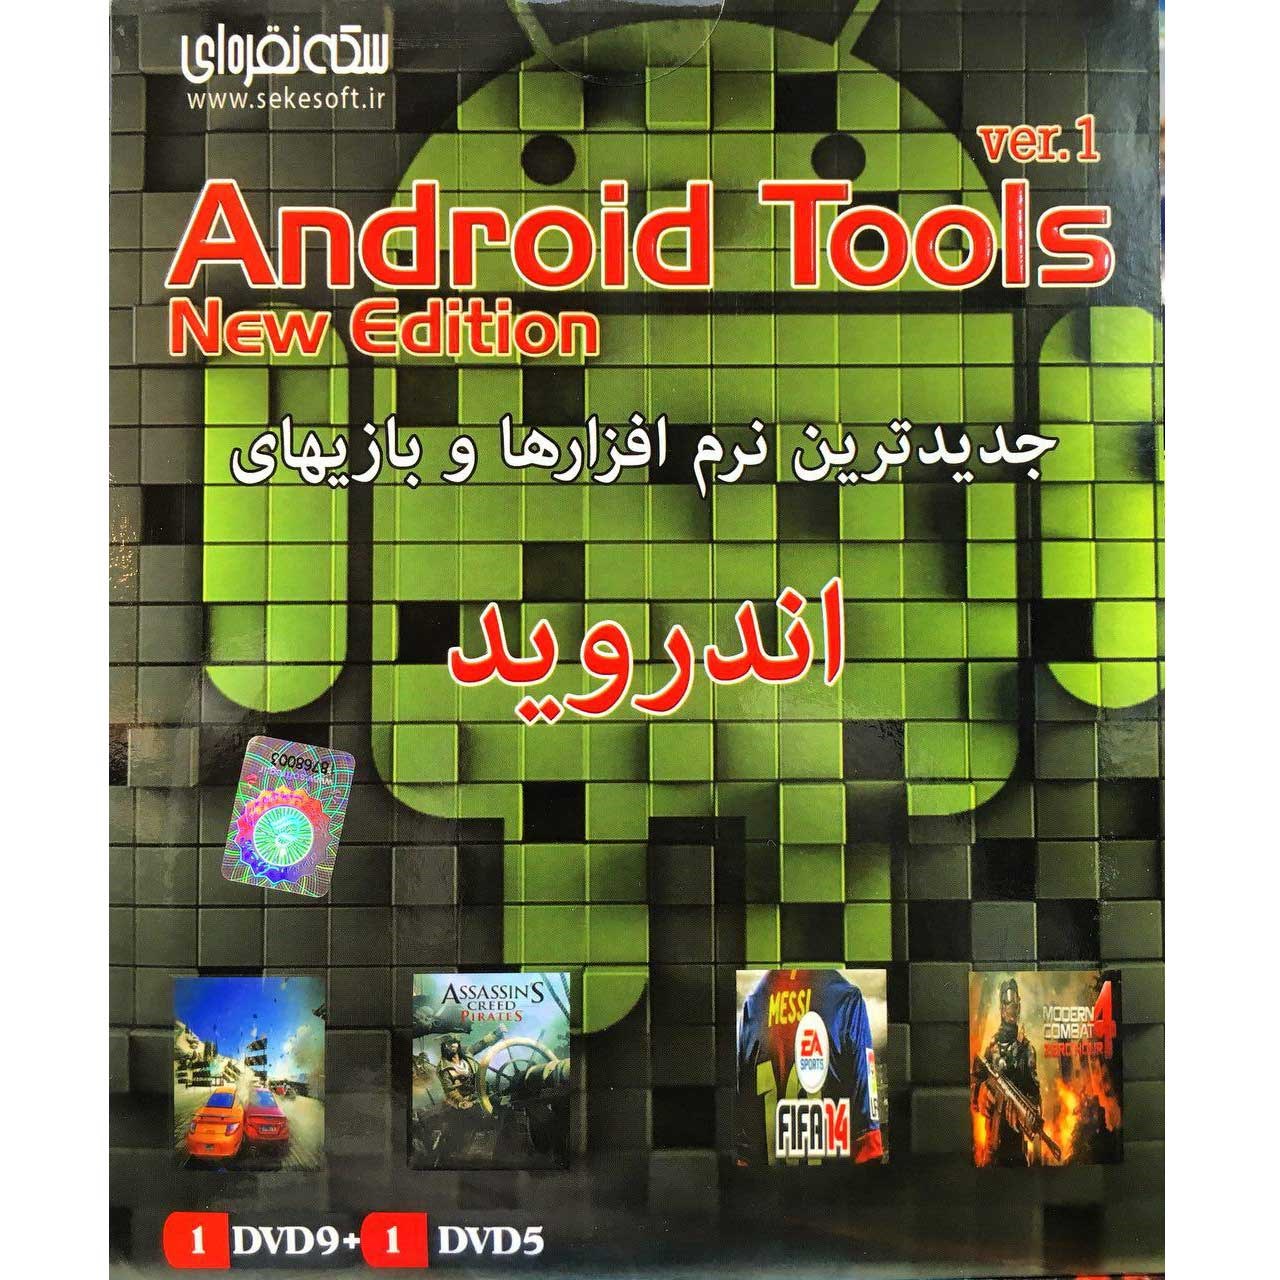 مجموعه نرم افزارهای Android Tools new edition